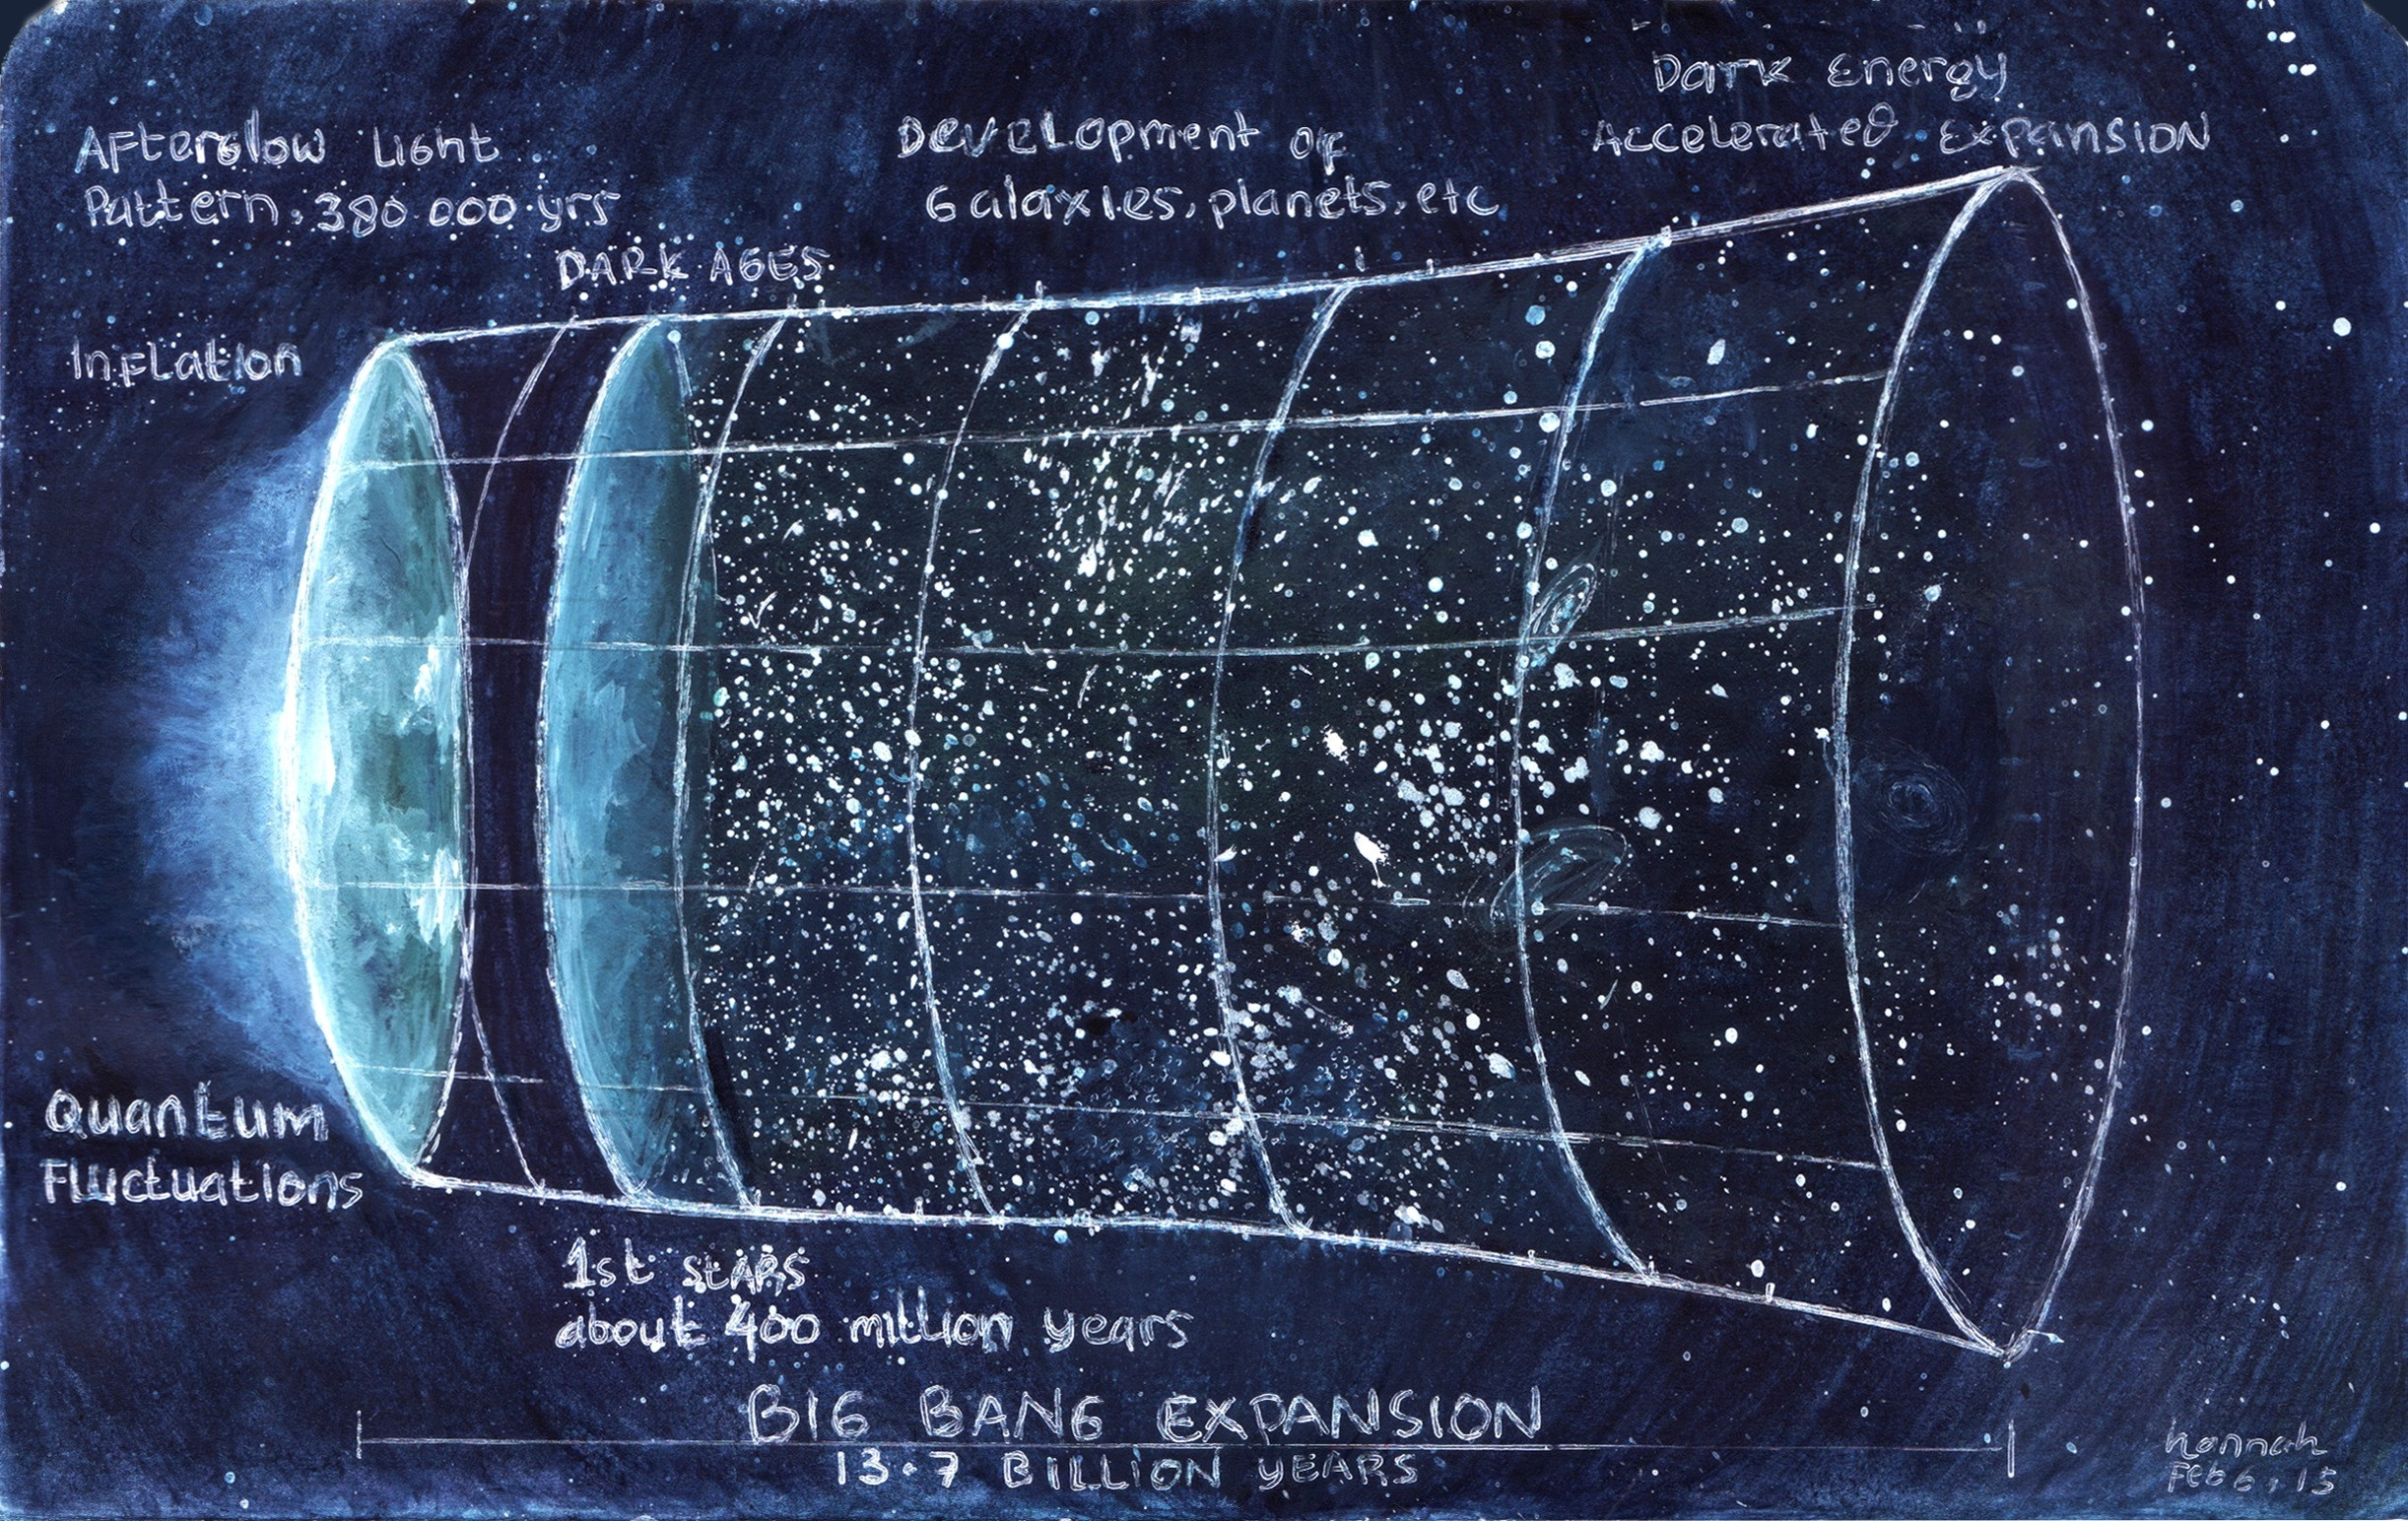 Big Bang Expansion